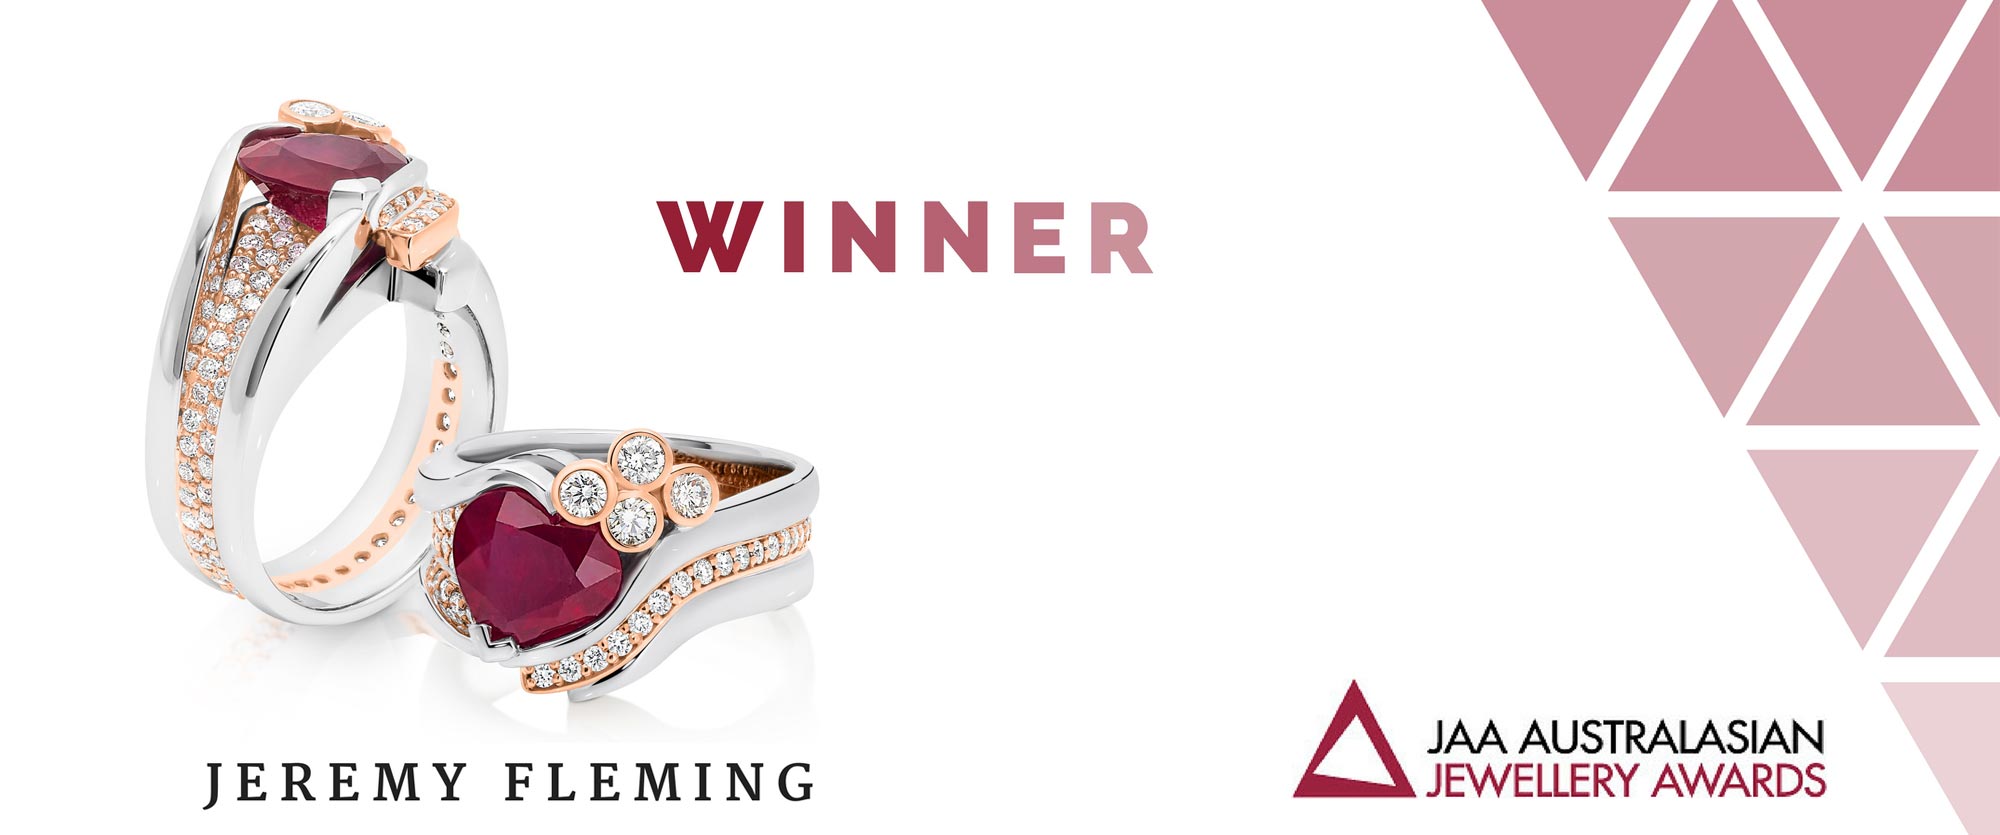 Jeremy Fleming Jewellers is Winner of JAA Australasian Jewellery Awards